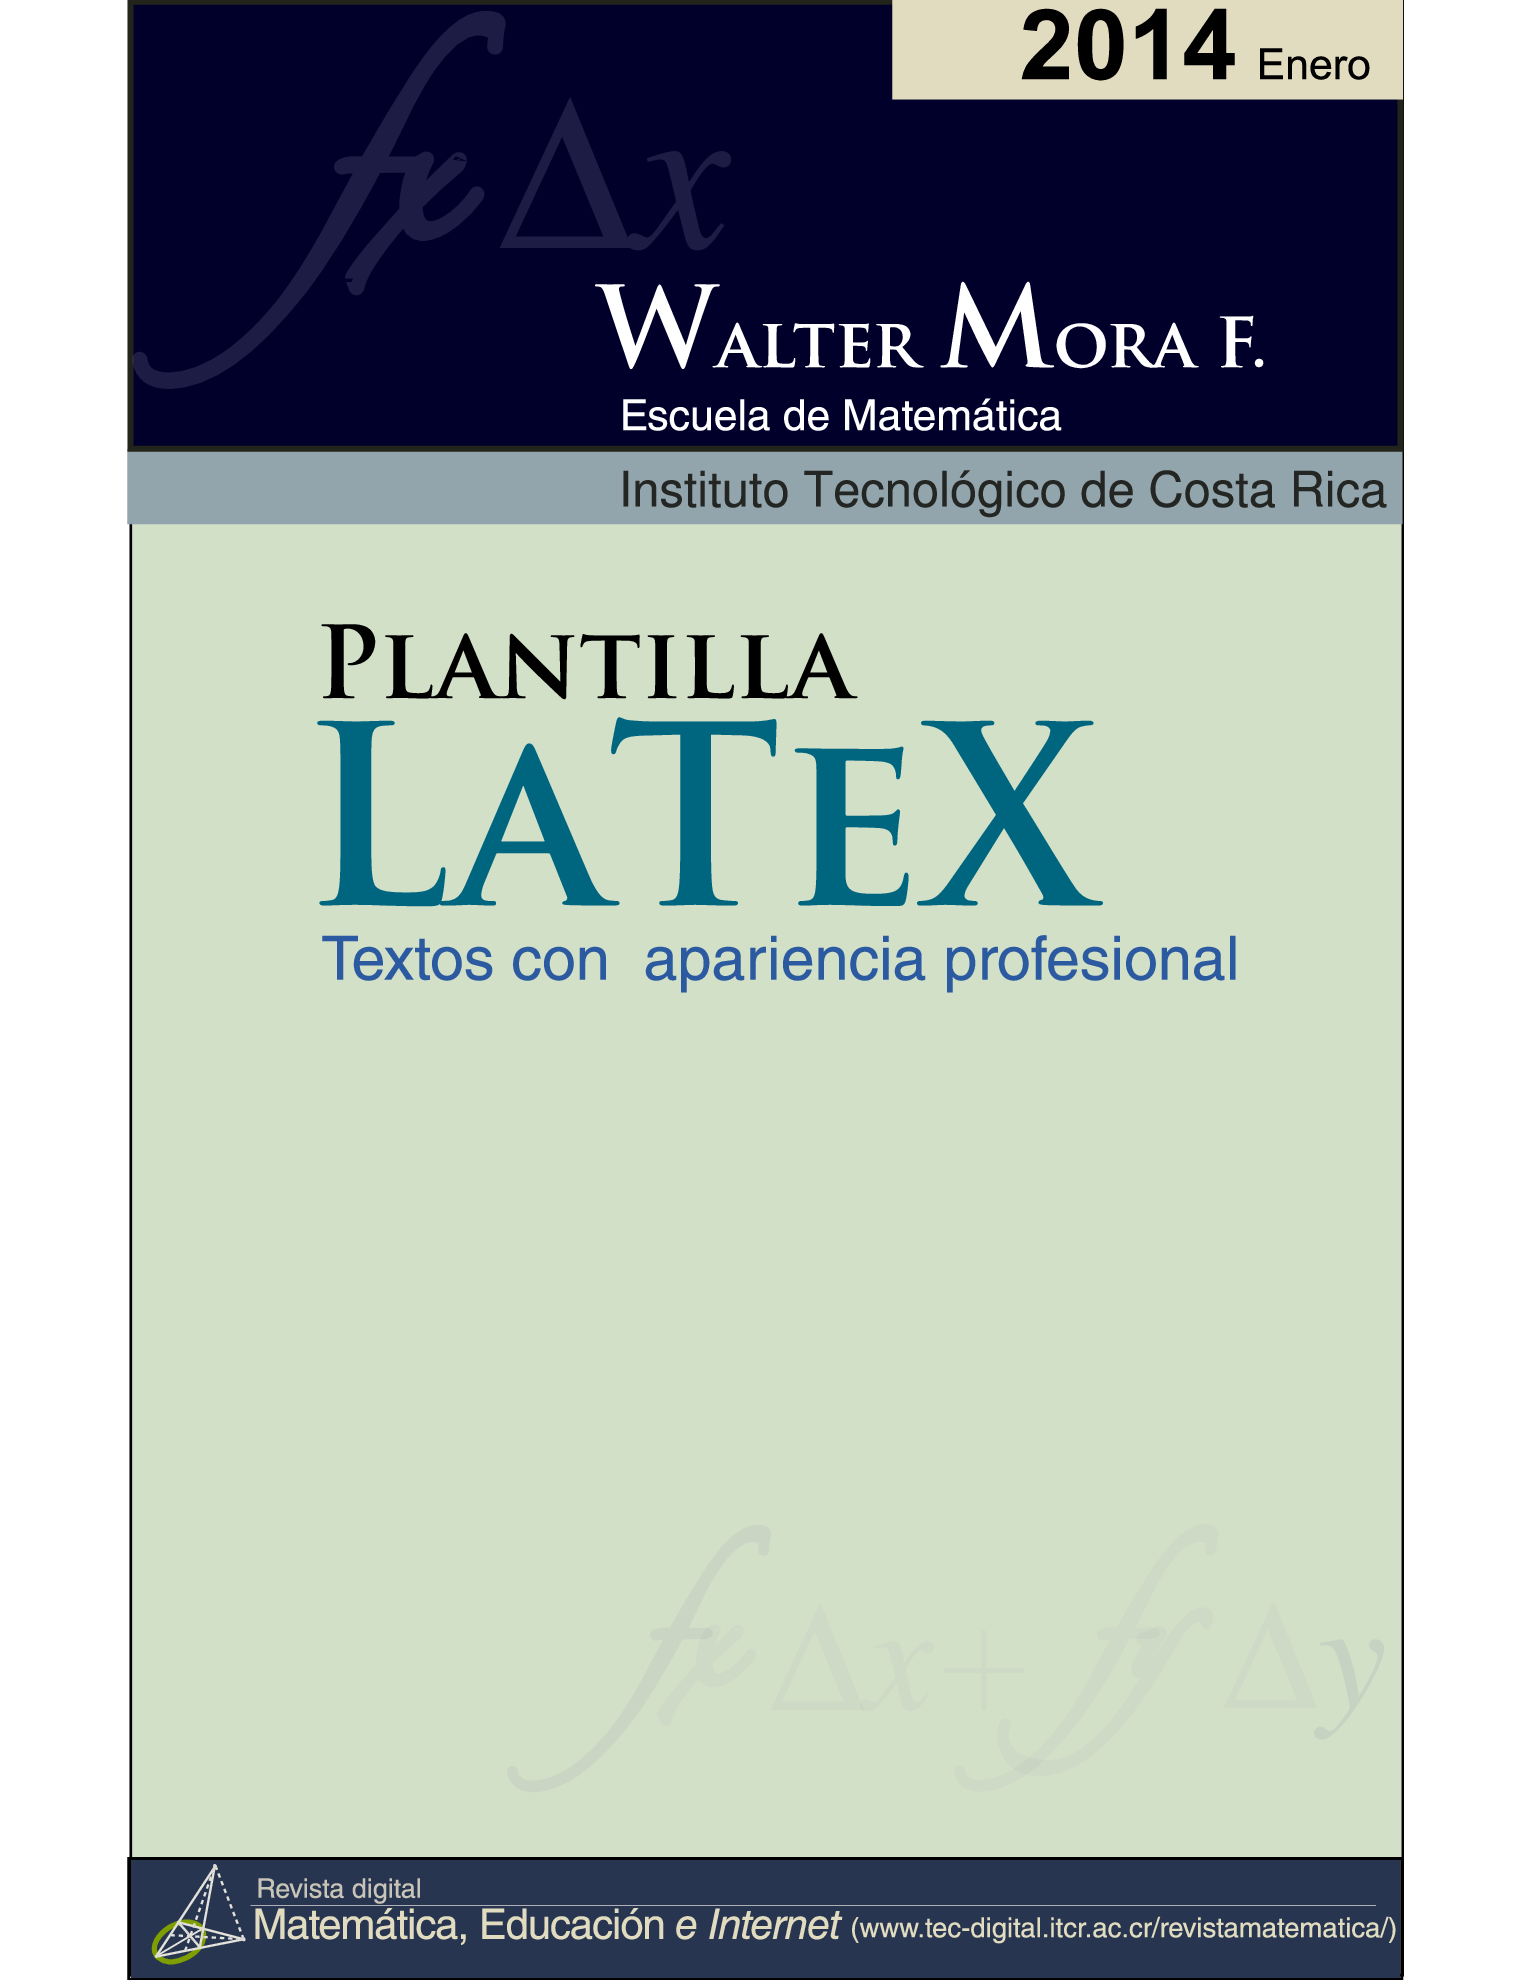 一个用心制作的 LaTeX 入门教程模板 - 章节目录设计值得拥有